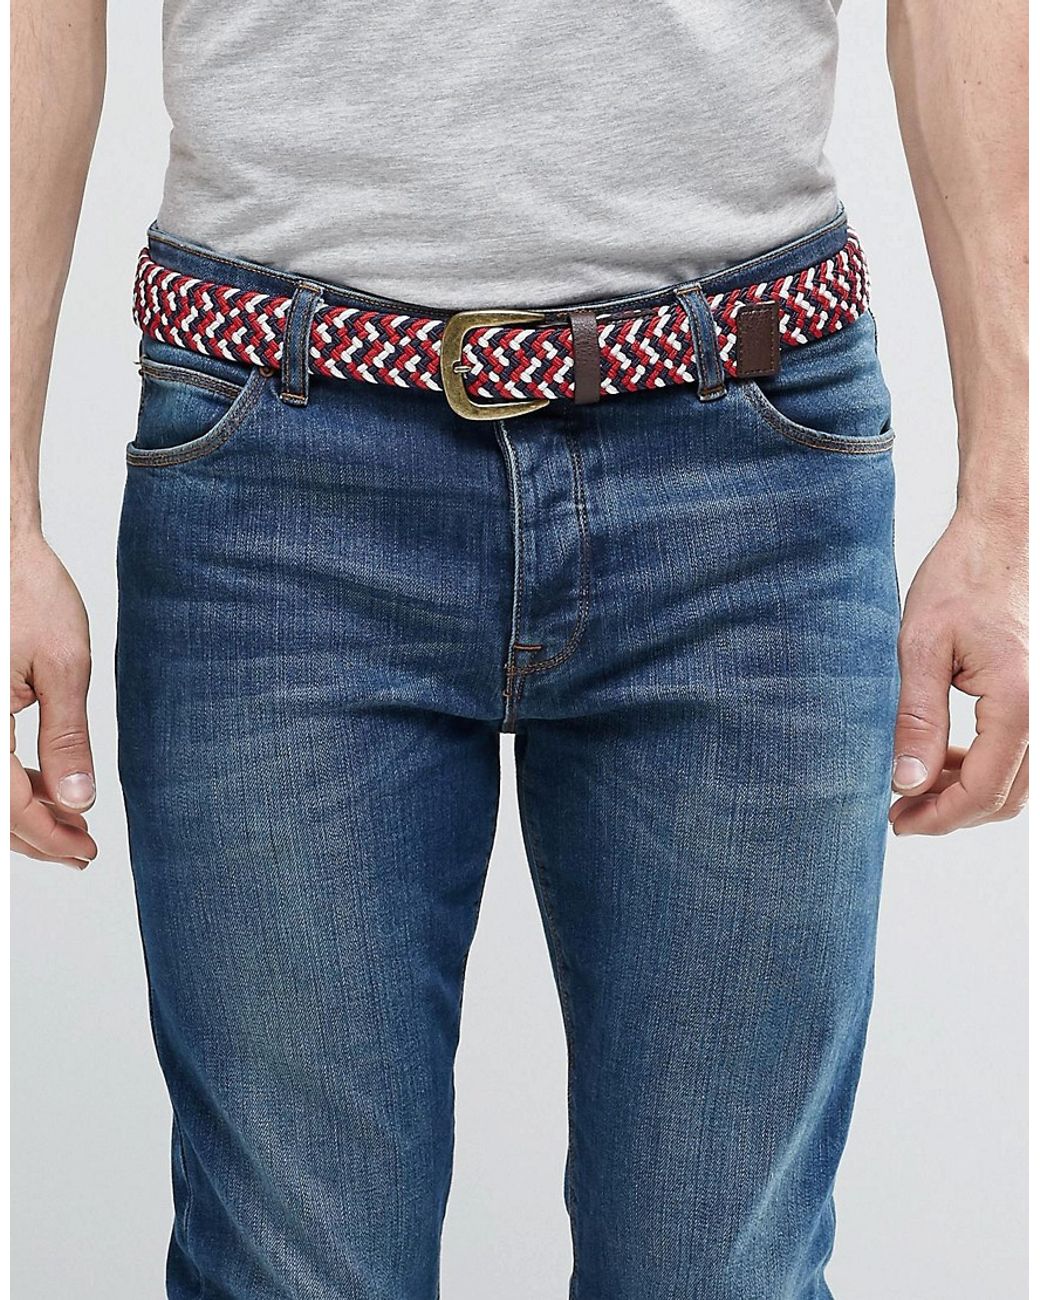 ASOS Woven Belt - Red/white/blue for Men